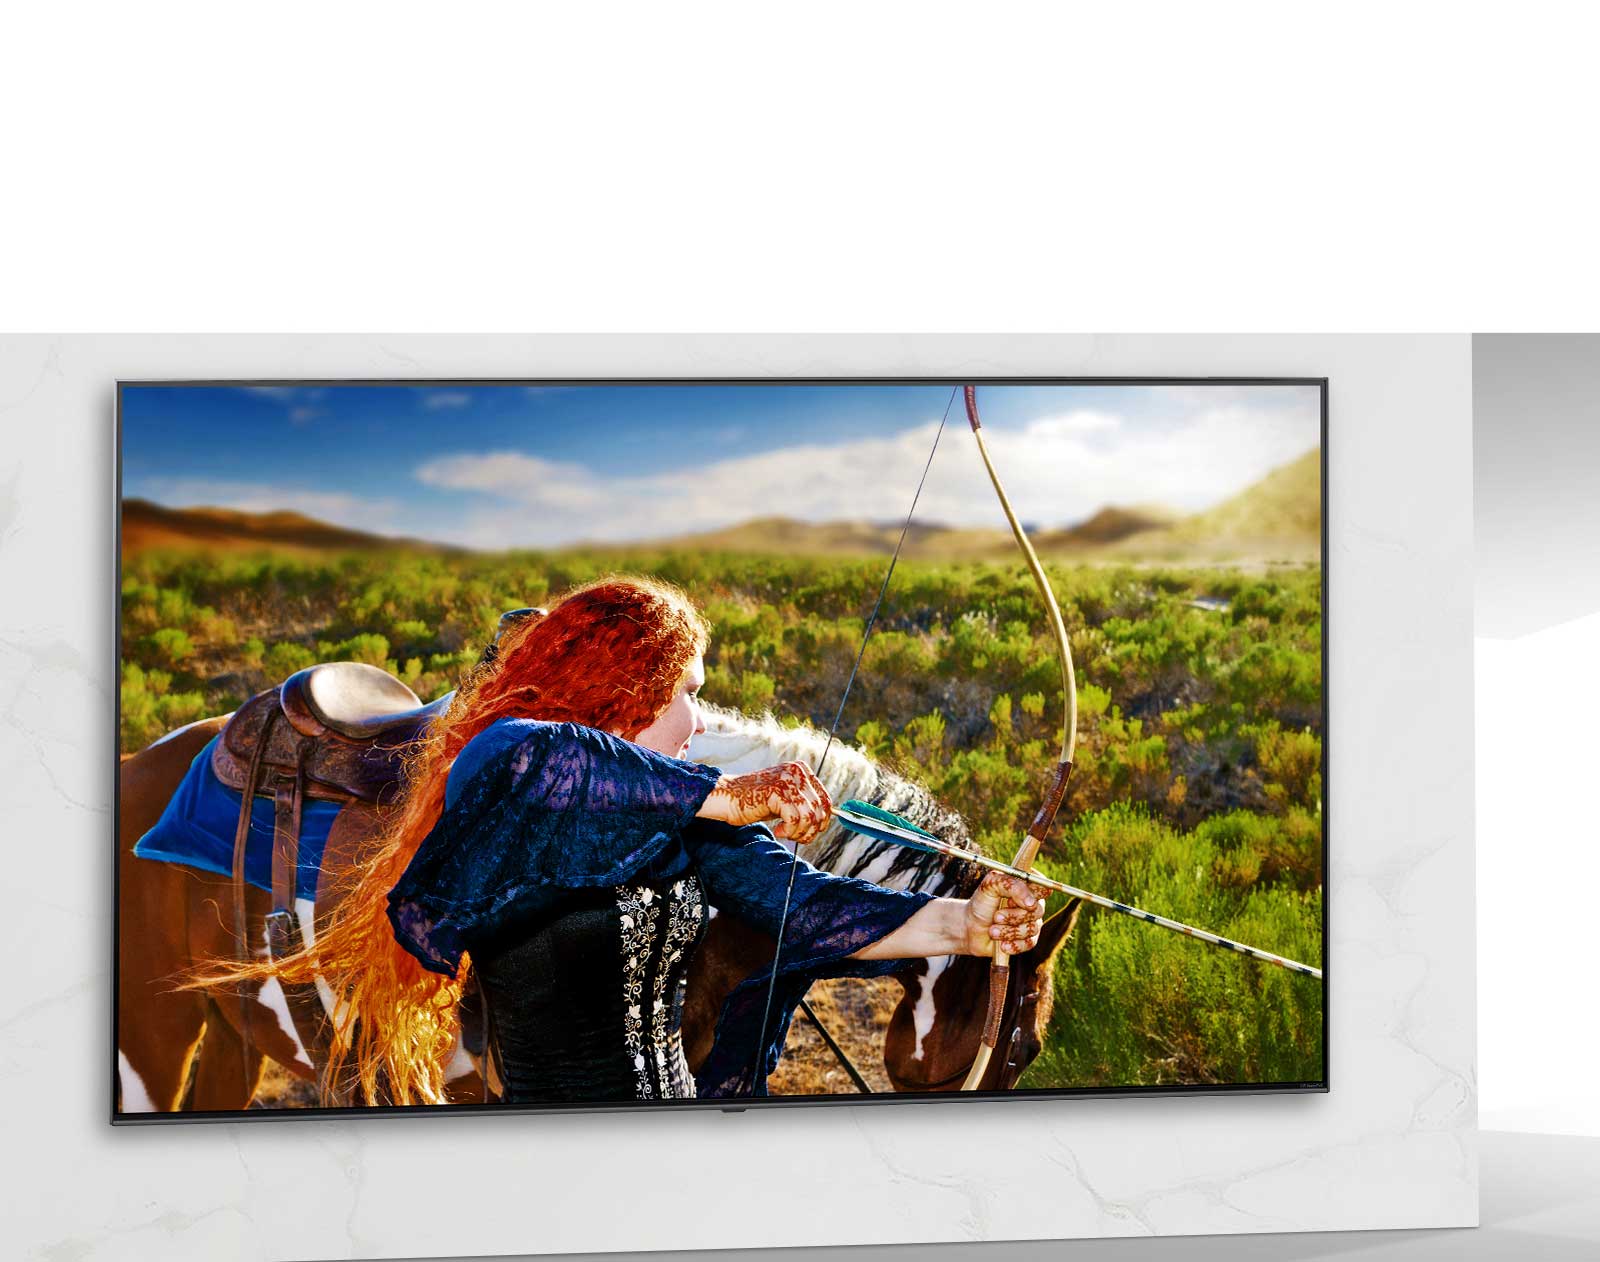 Екран телевізора, що показує сцену науково-фантастичного фільму з жінкою, яка стріляє з лука